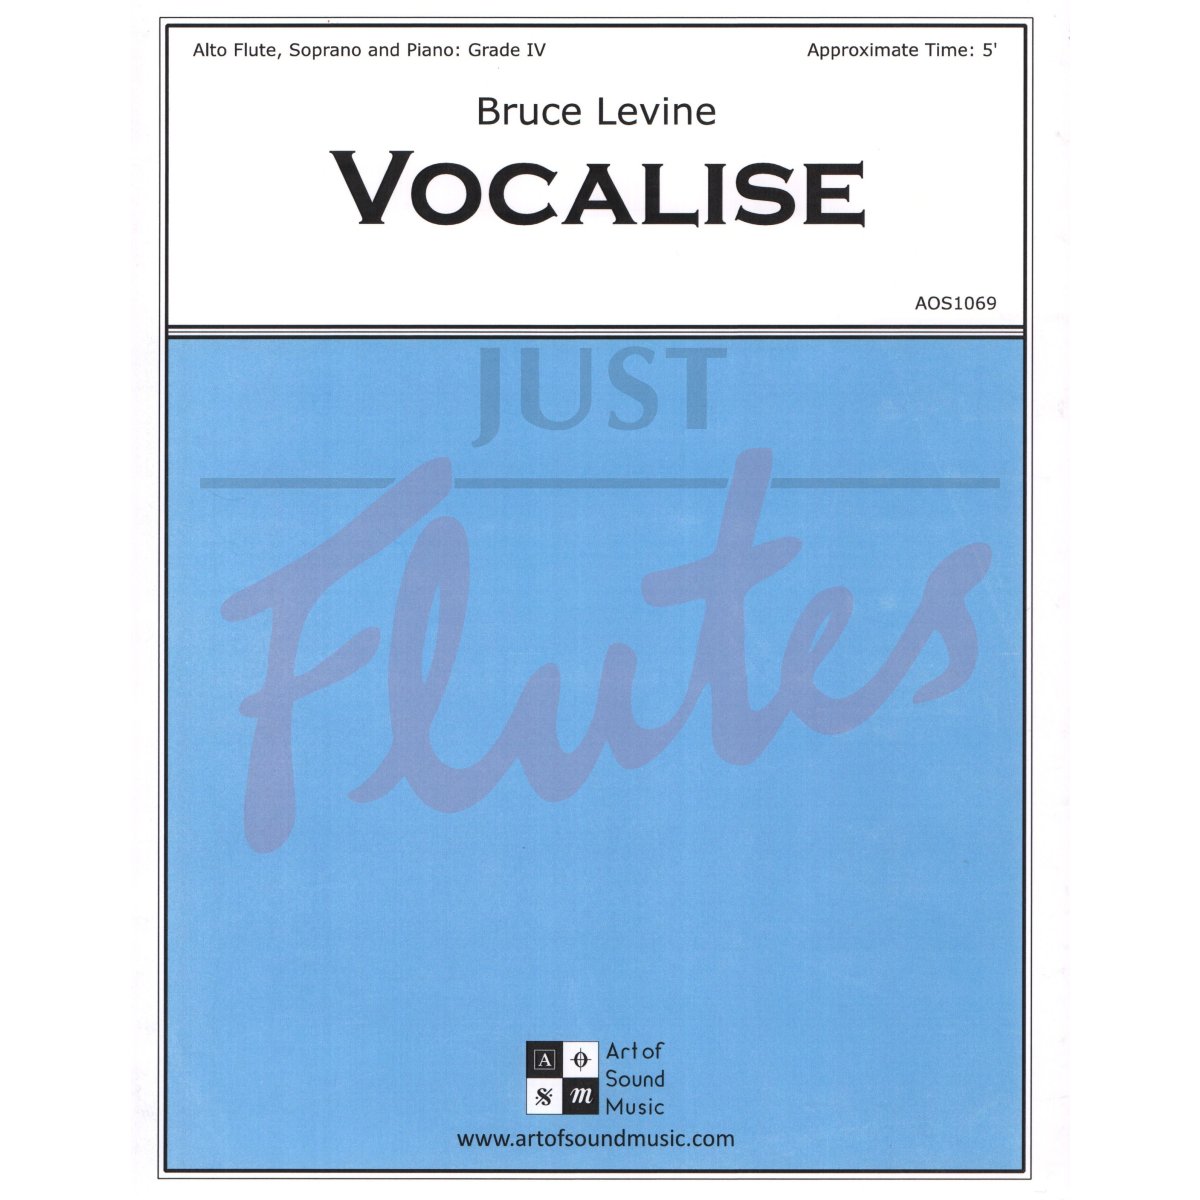 Vocalise for Alto Flute, Soprano and Piano